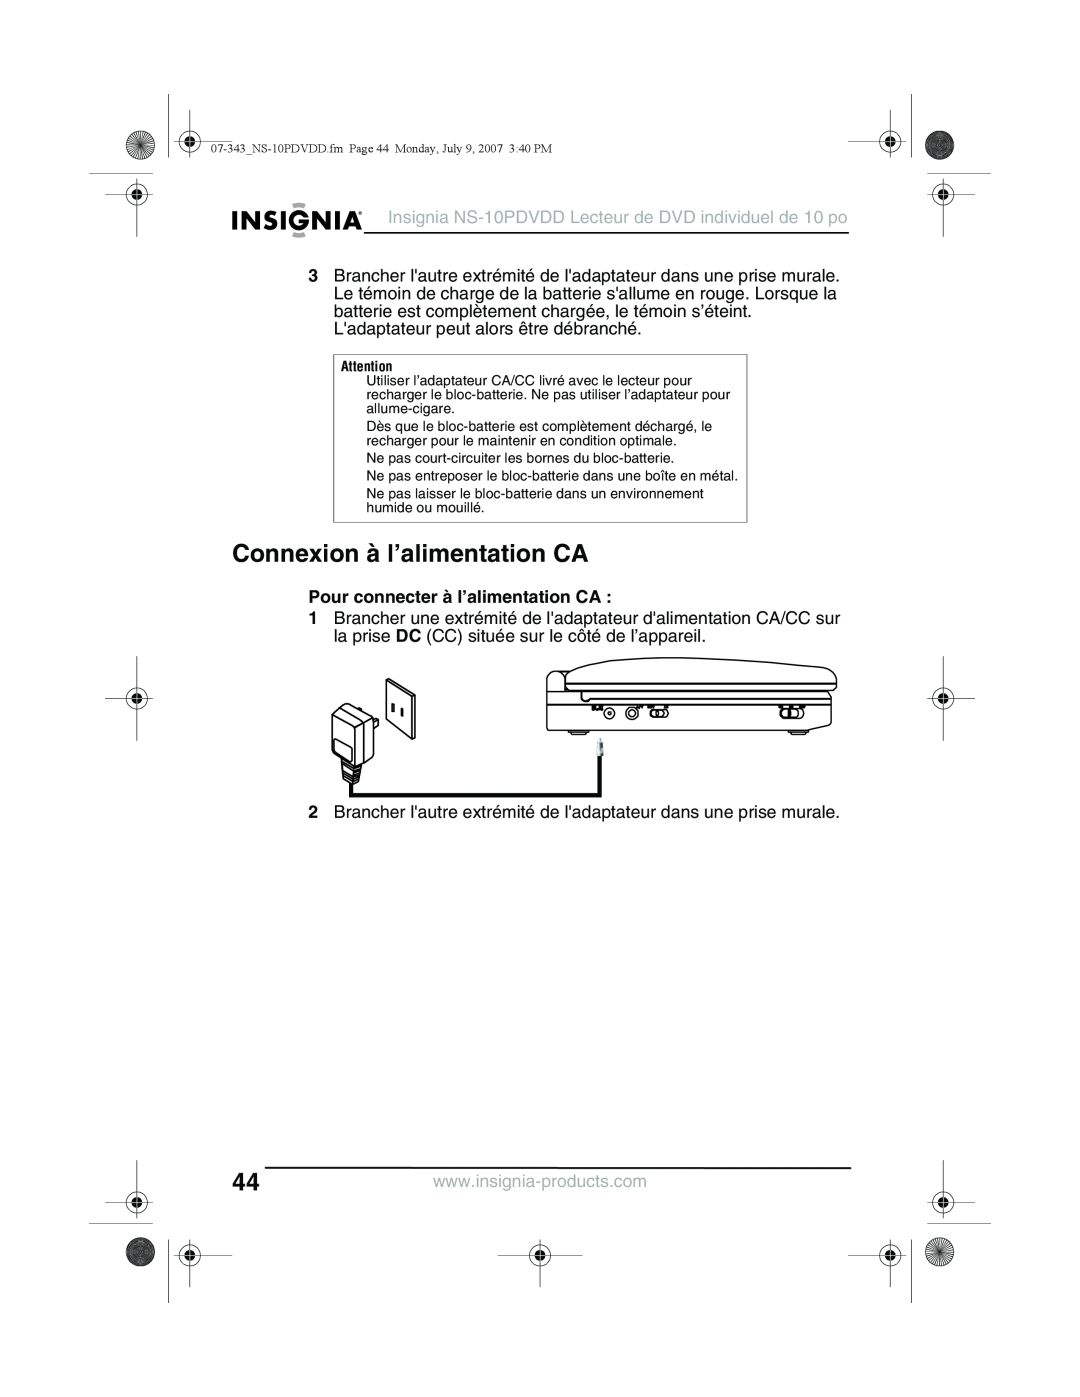 Insignia NS-10PDVDD manual Connexion à l’alimentation CA, Pour connecter à l’alimentation CA 